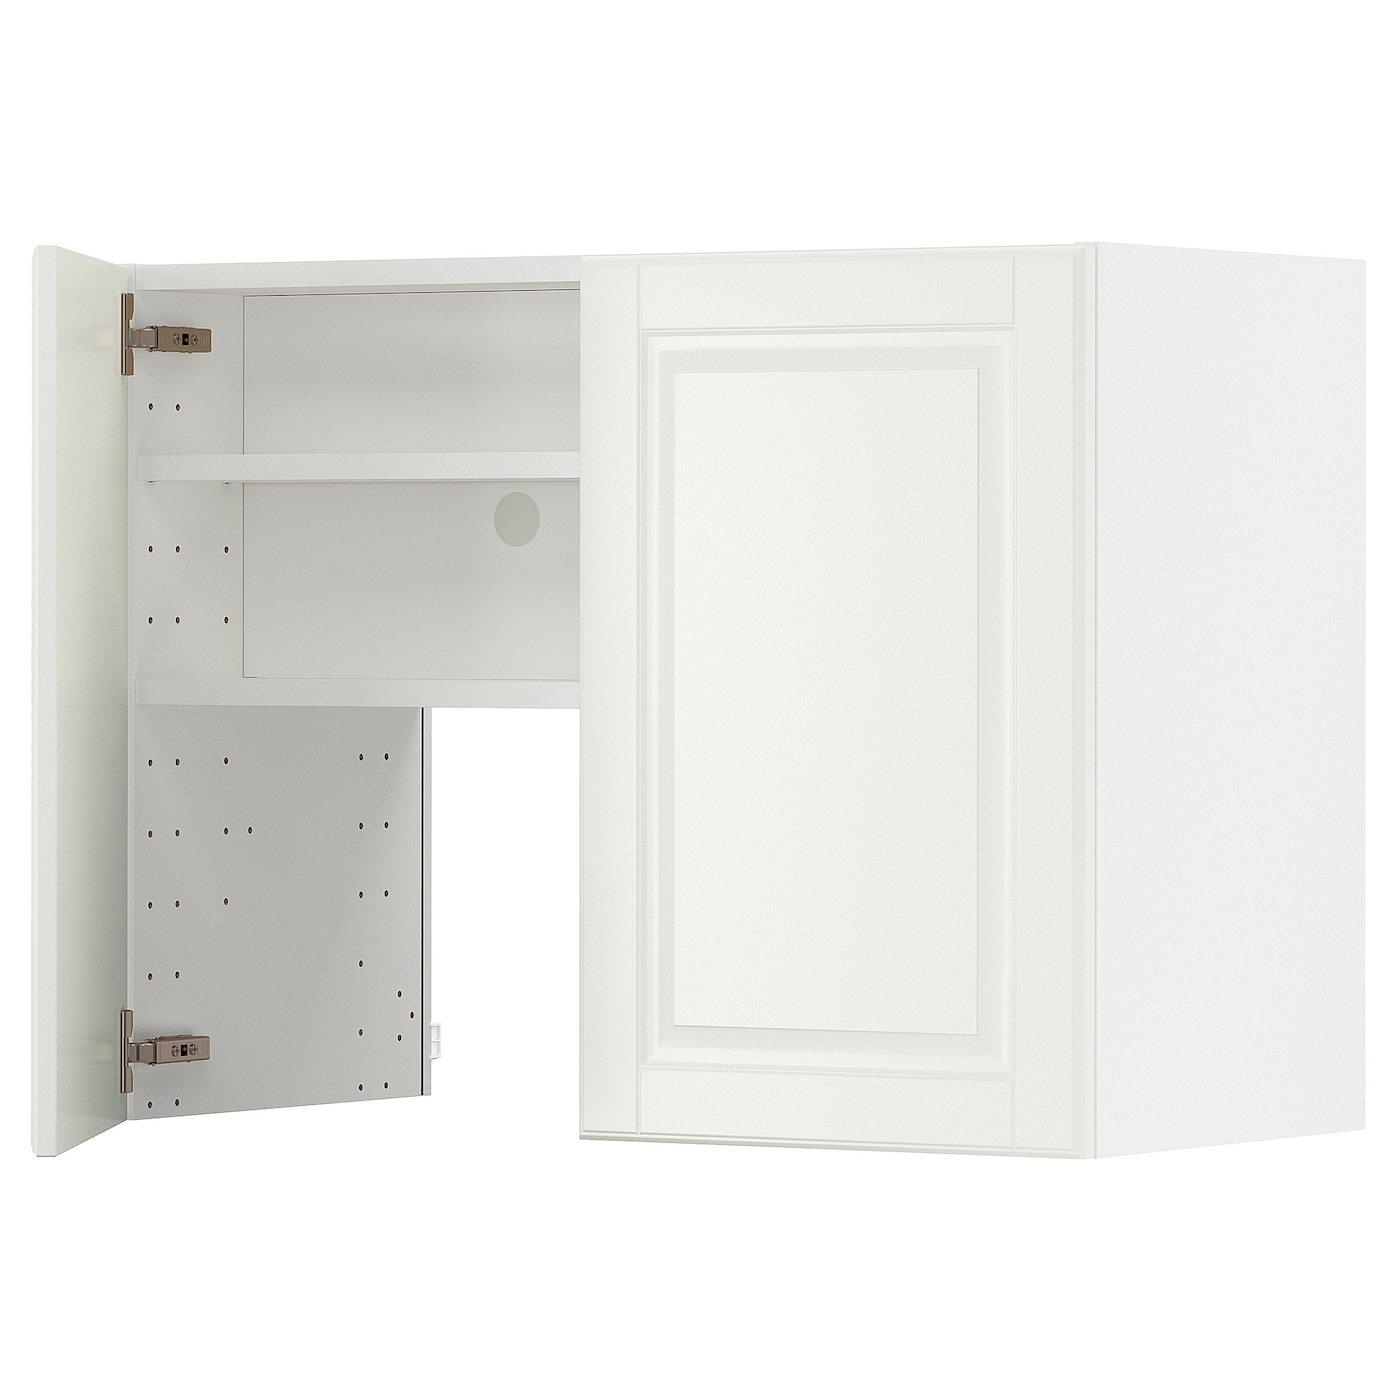 Навесной шкаф - METOD IKEA/ МЕТОД ИКЕА, 60х80 см, белый/кремовый